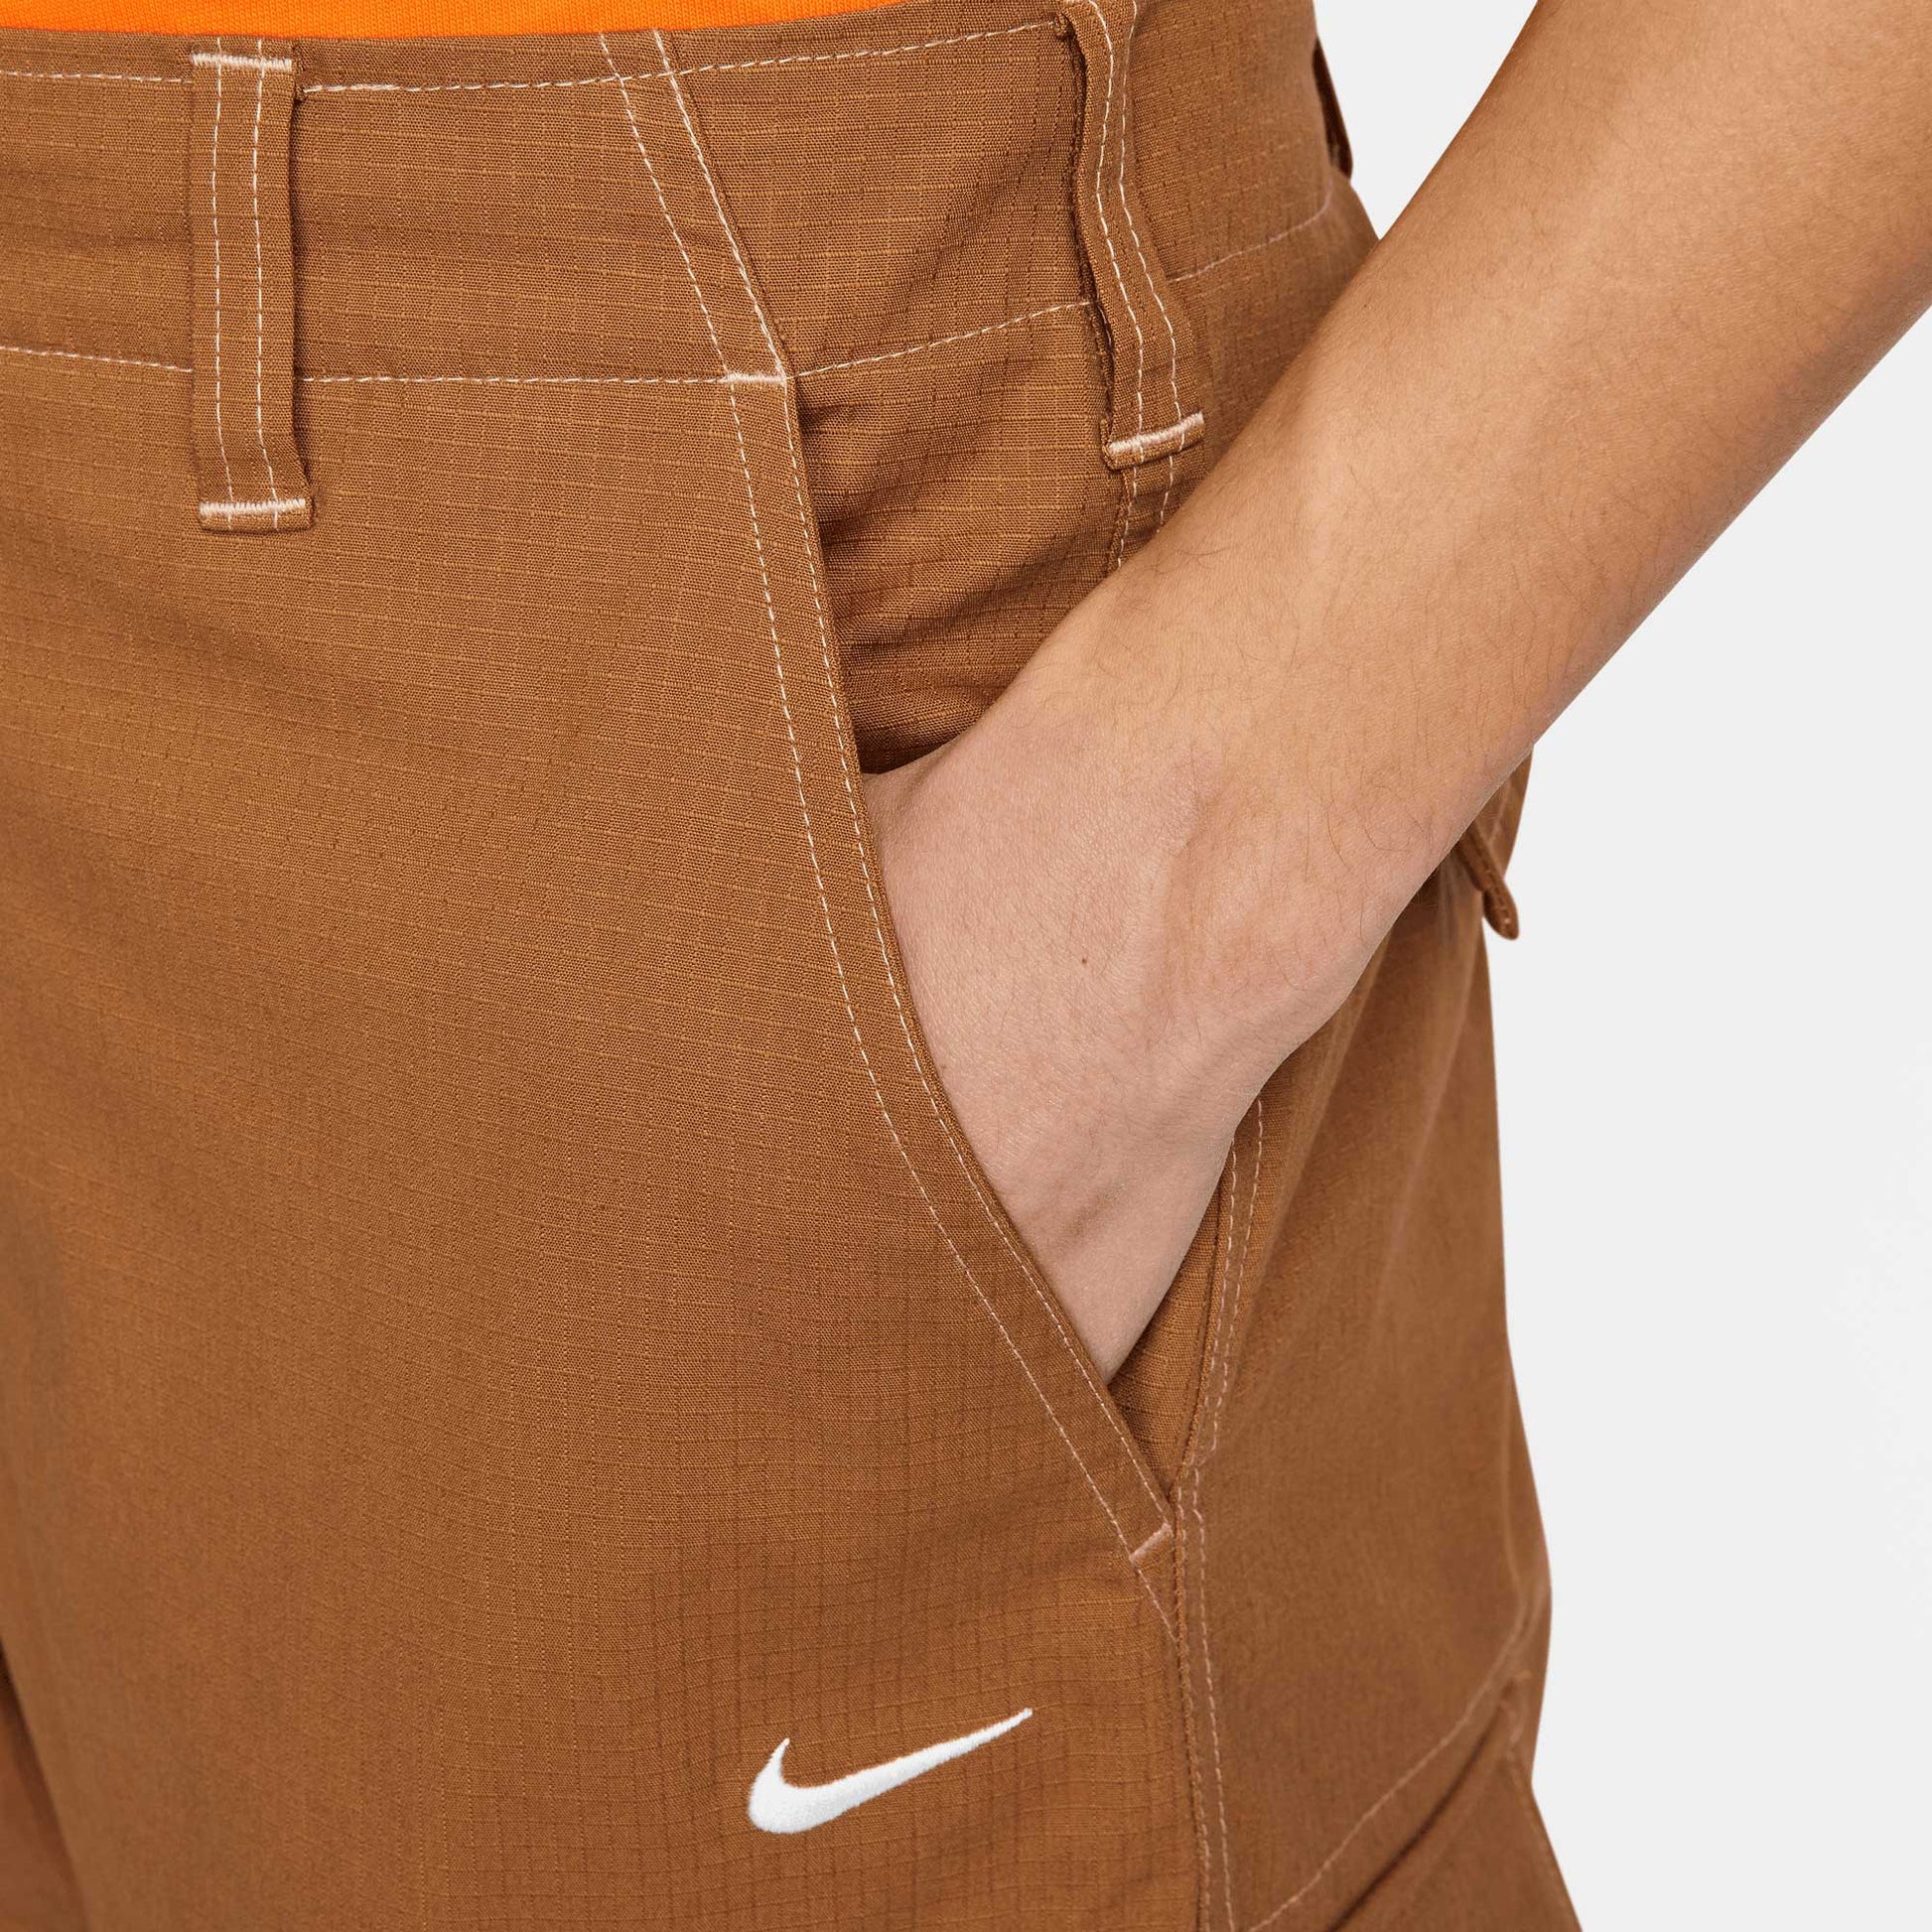 Nike SB Kearny Cargo Pants, ale brown/white - Tiki Room Skateboards - 6